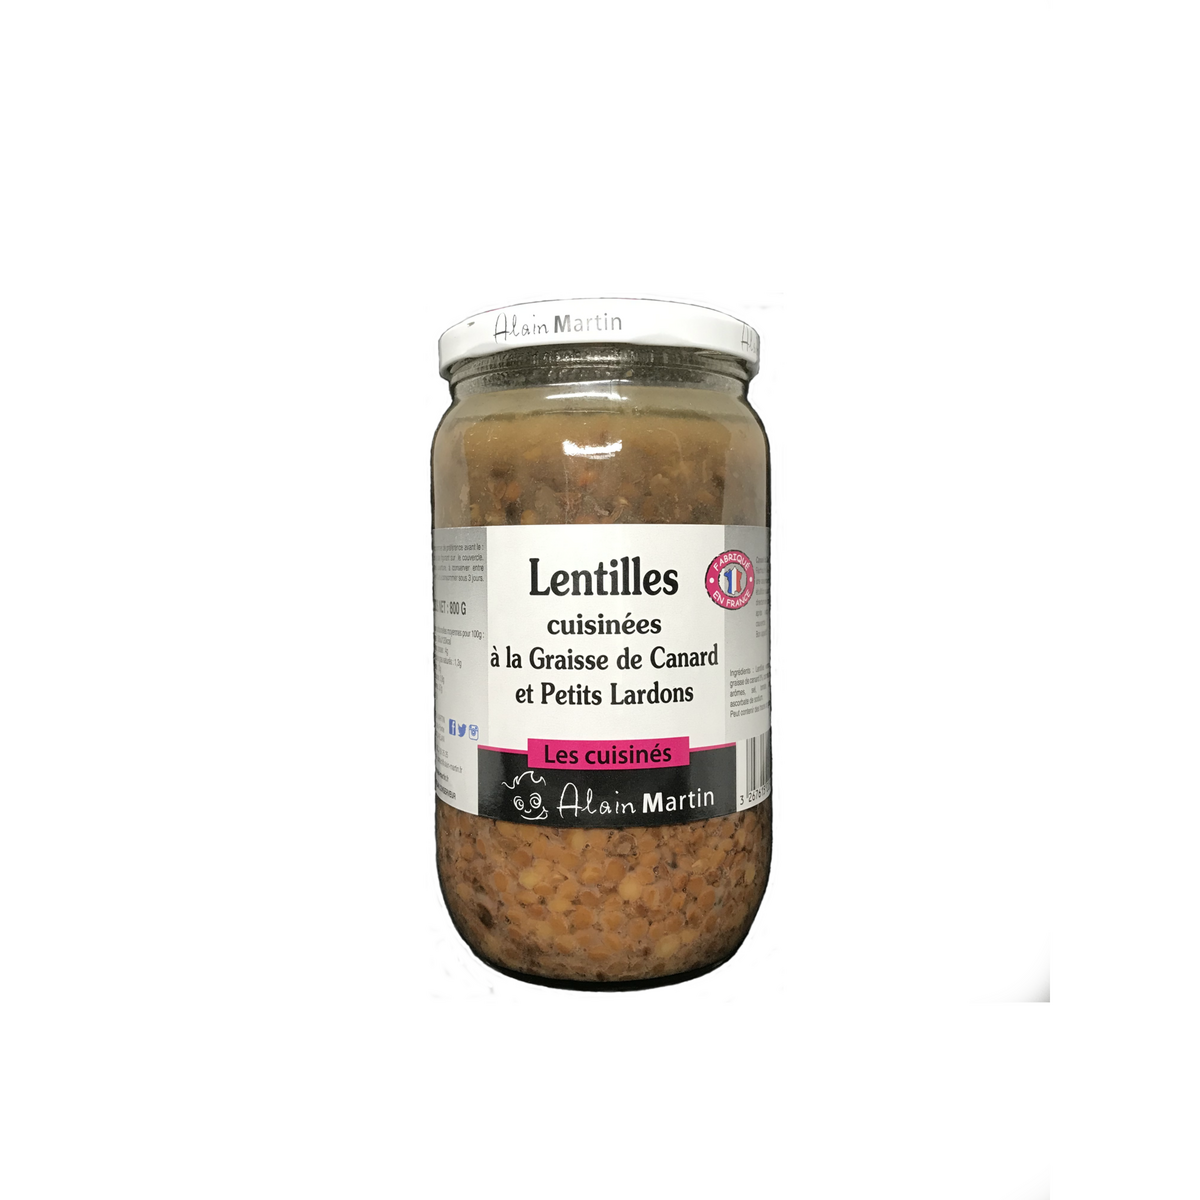 ALAIN MARTIN Lentilles cuisinées à la graisse de canard et petits lardons, en bocal 800g